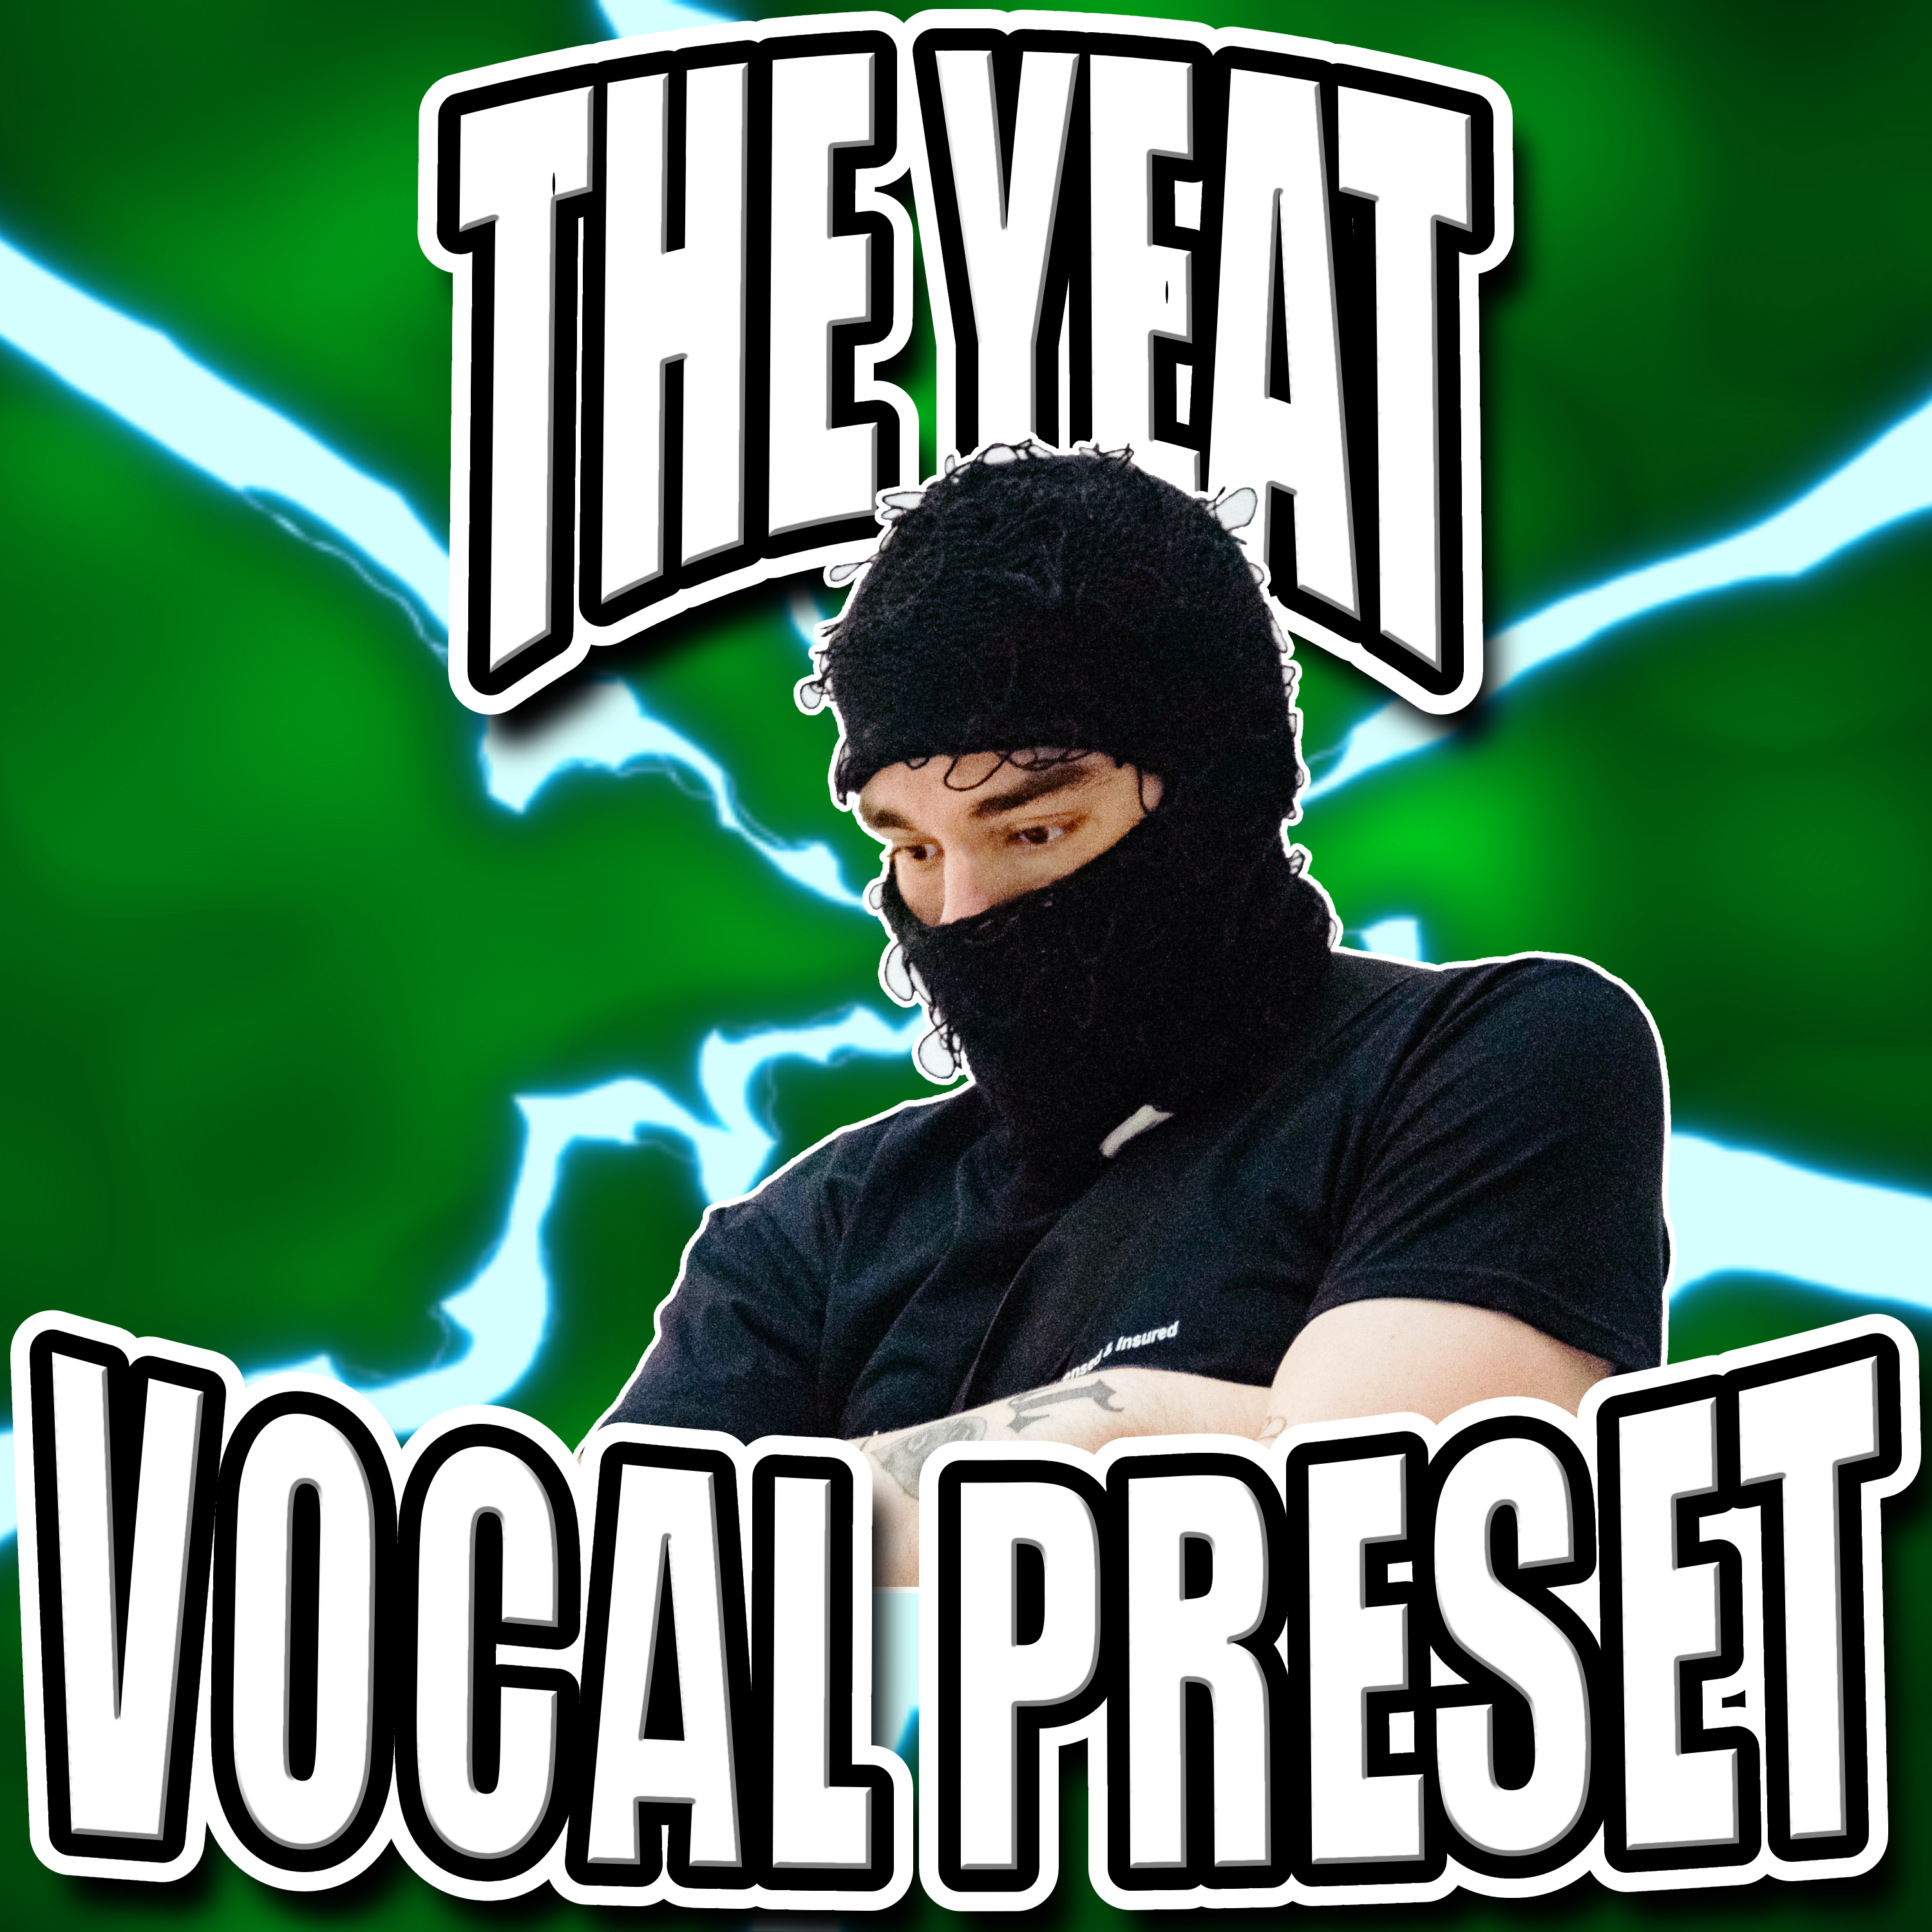 Yeat Vocal Preset